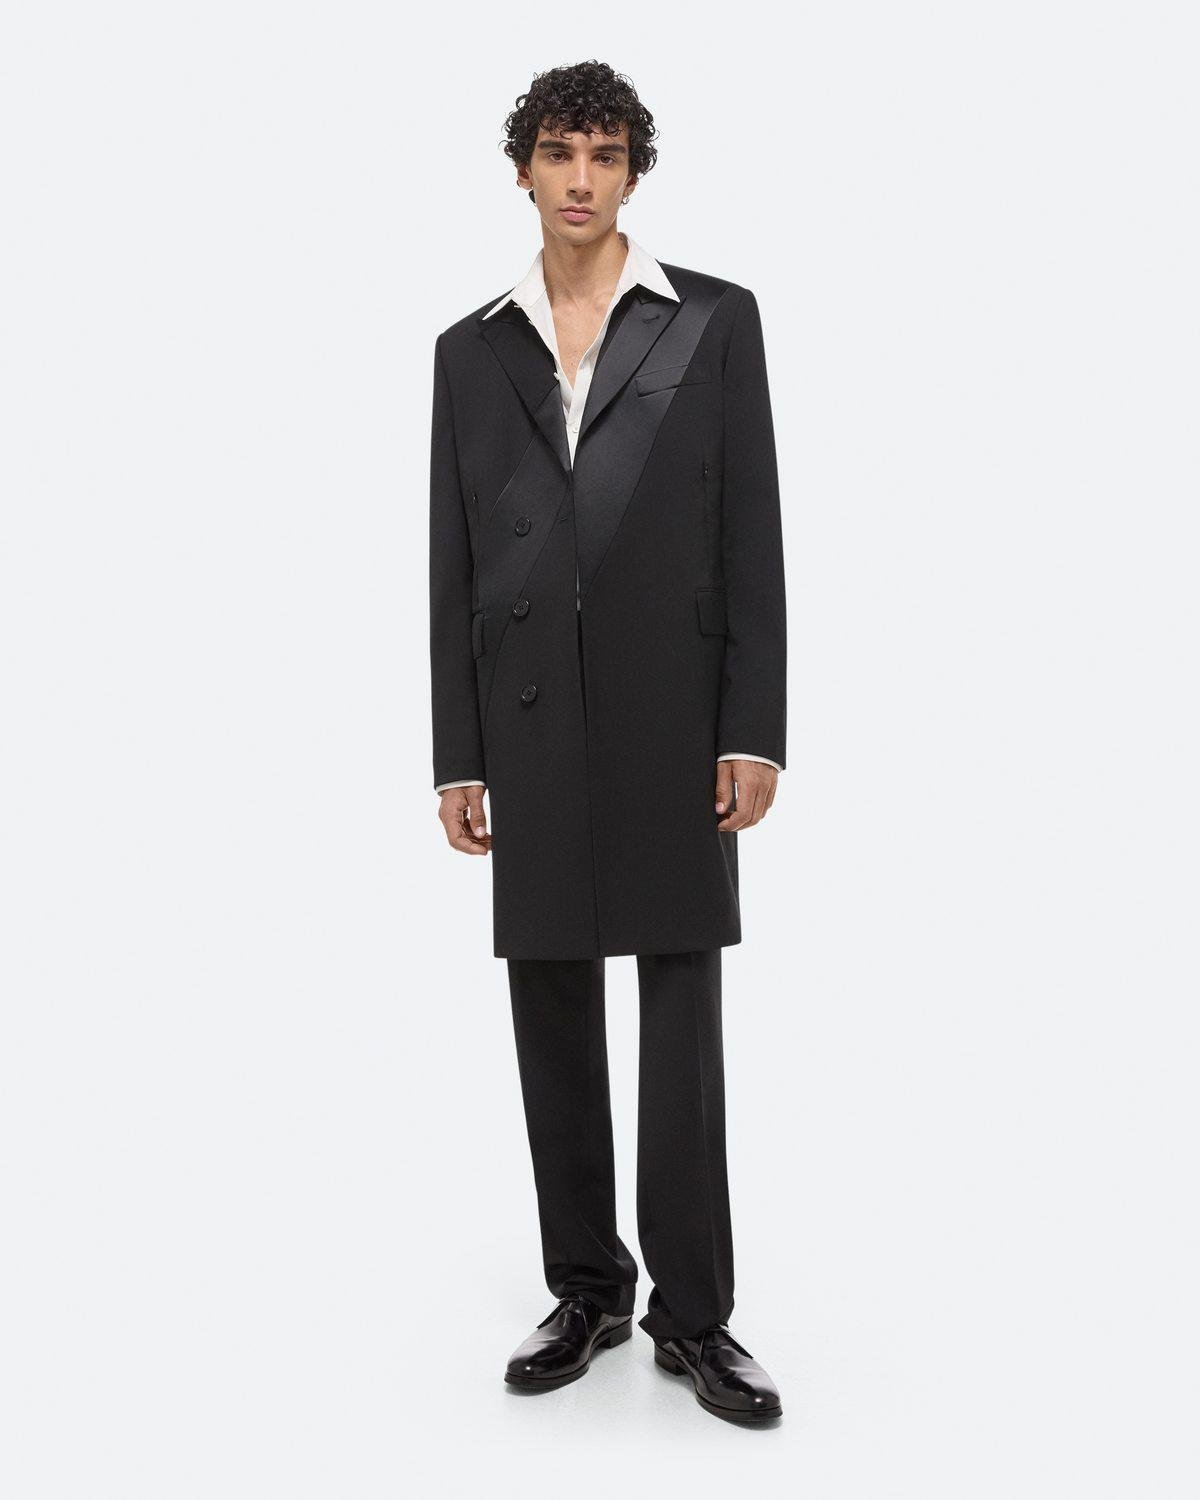 Virgin Wool Tuxedo Car Coat by HELMUT LANG